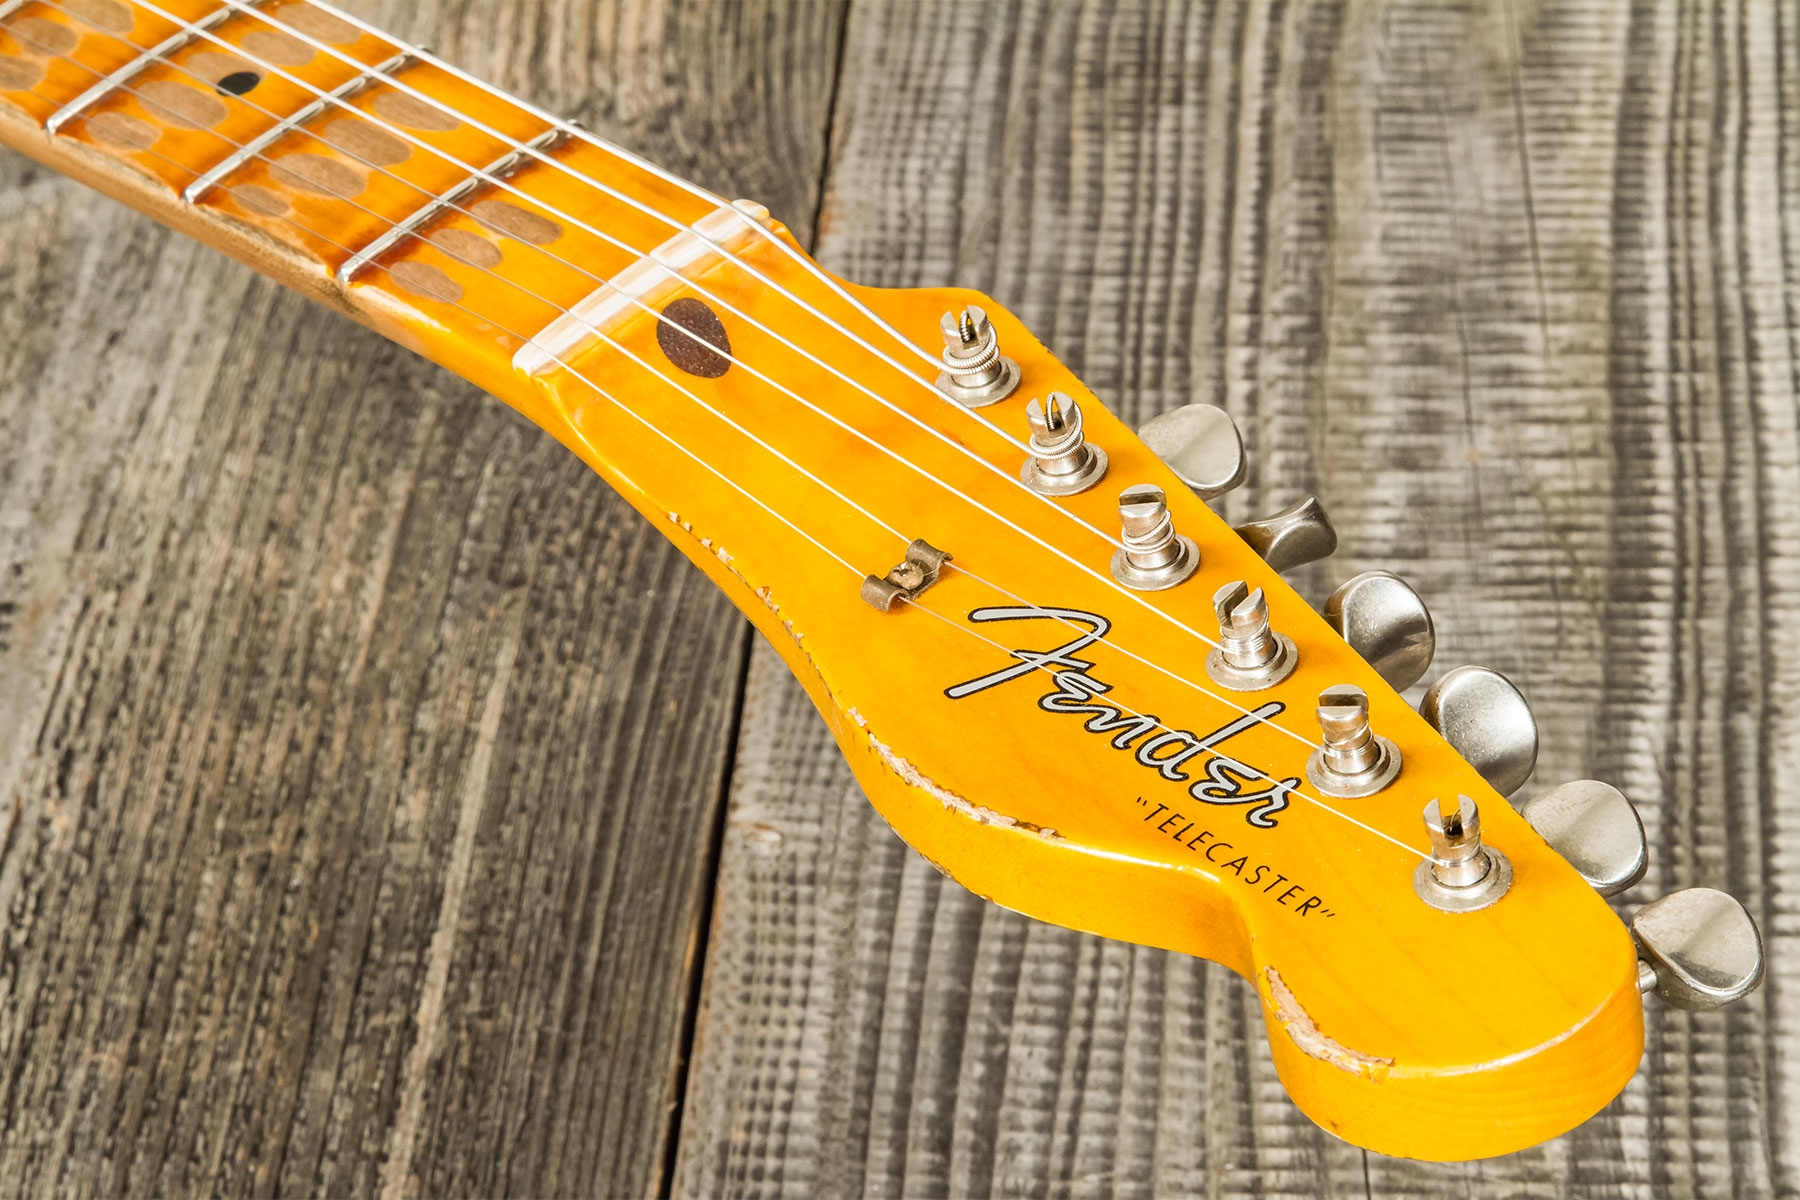 Fender Custom Shop Tele 1957 Sh Ht Mn #r117579 - Heavy Relic Desert Sand Ov. Sunburst - Tel shape electric guitar - Variation 10